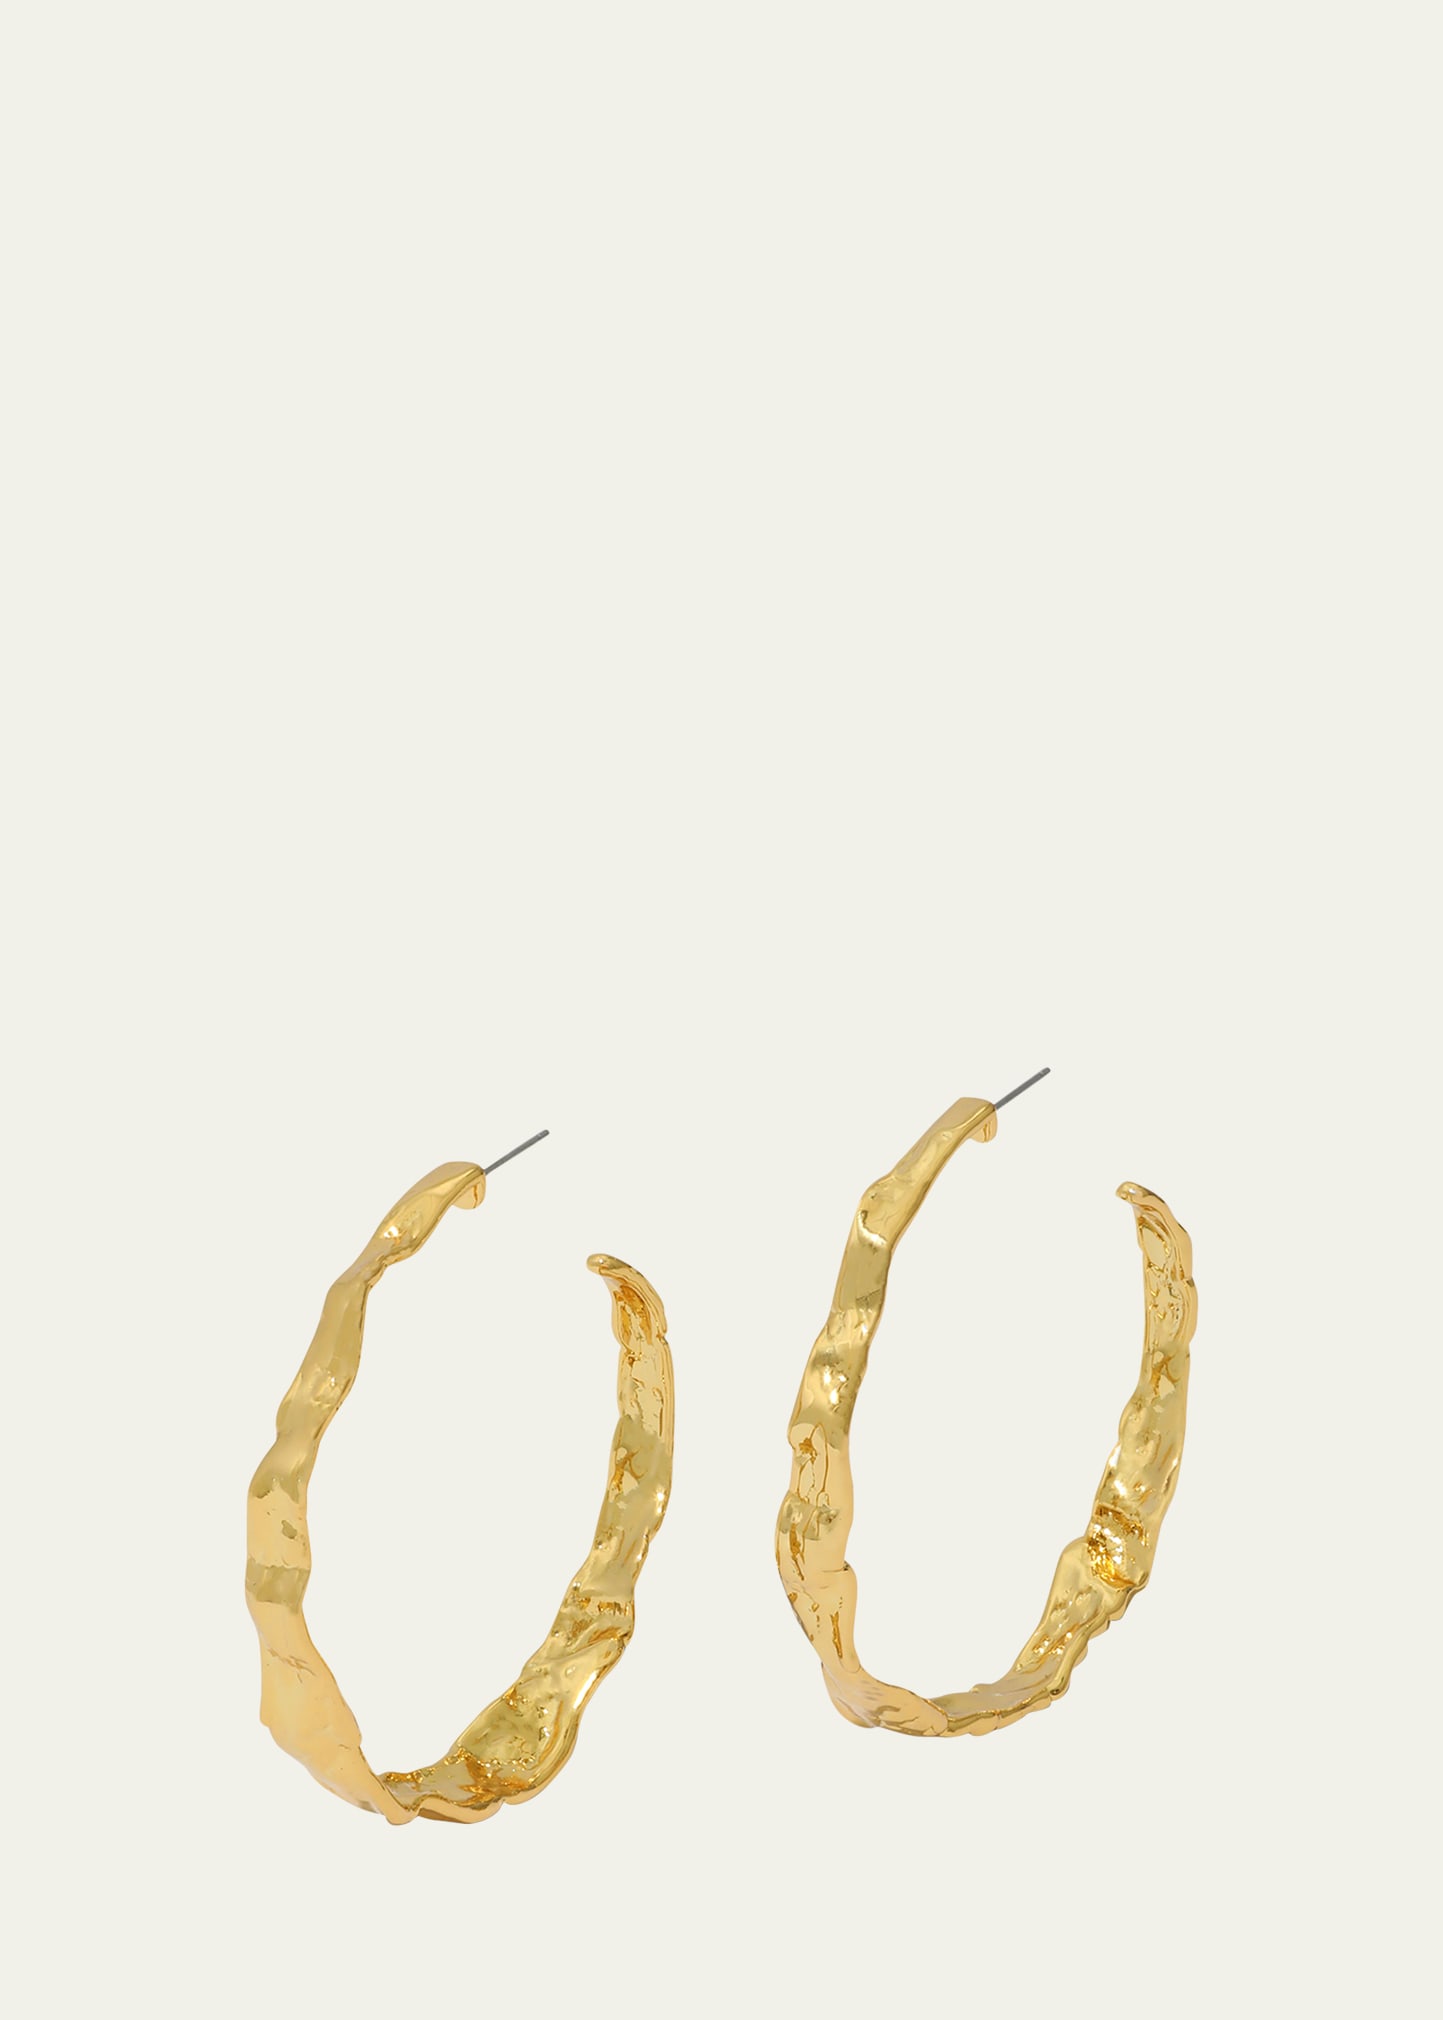 Brut Textured Gold Hoop Earrings